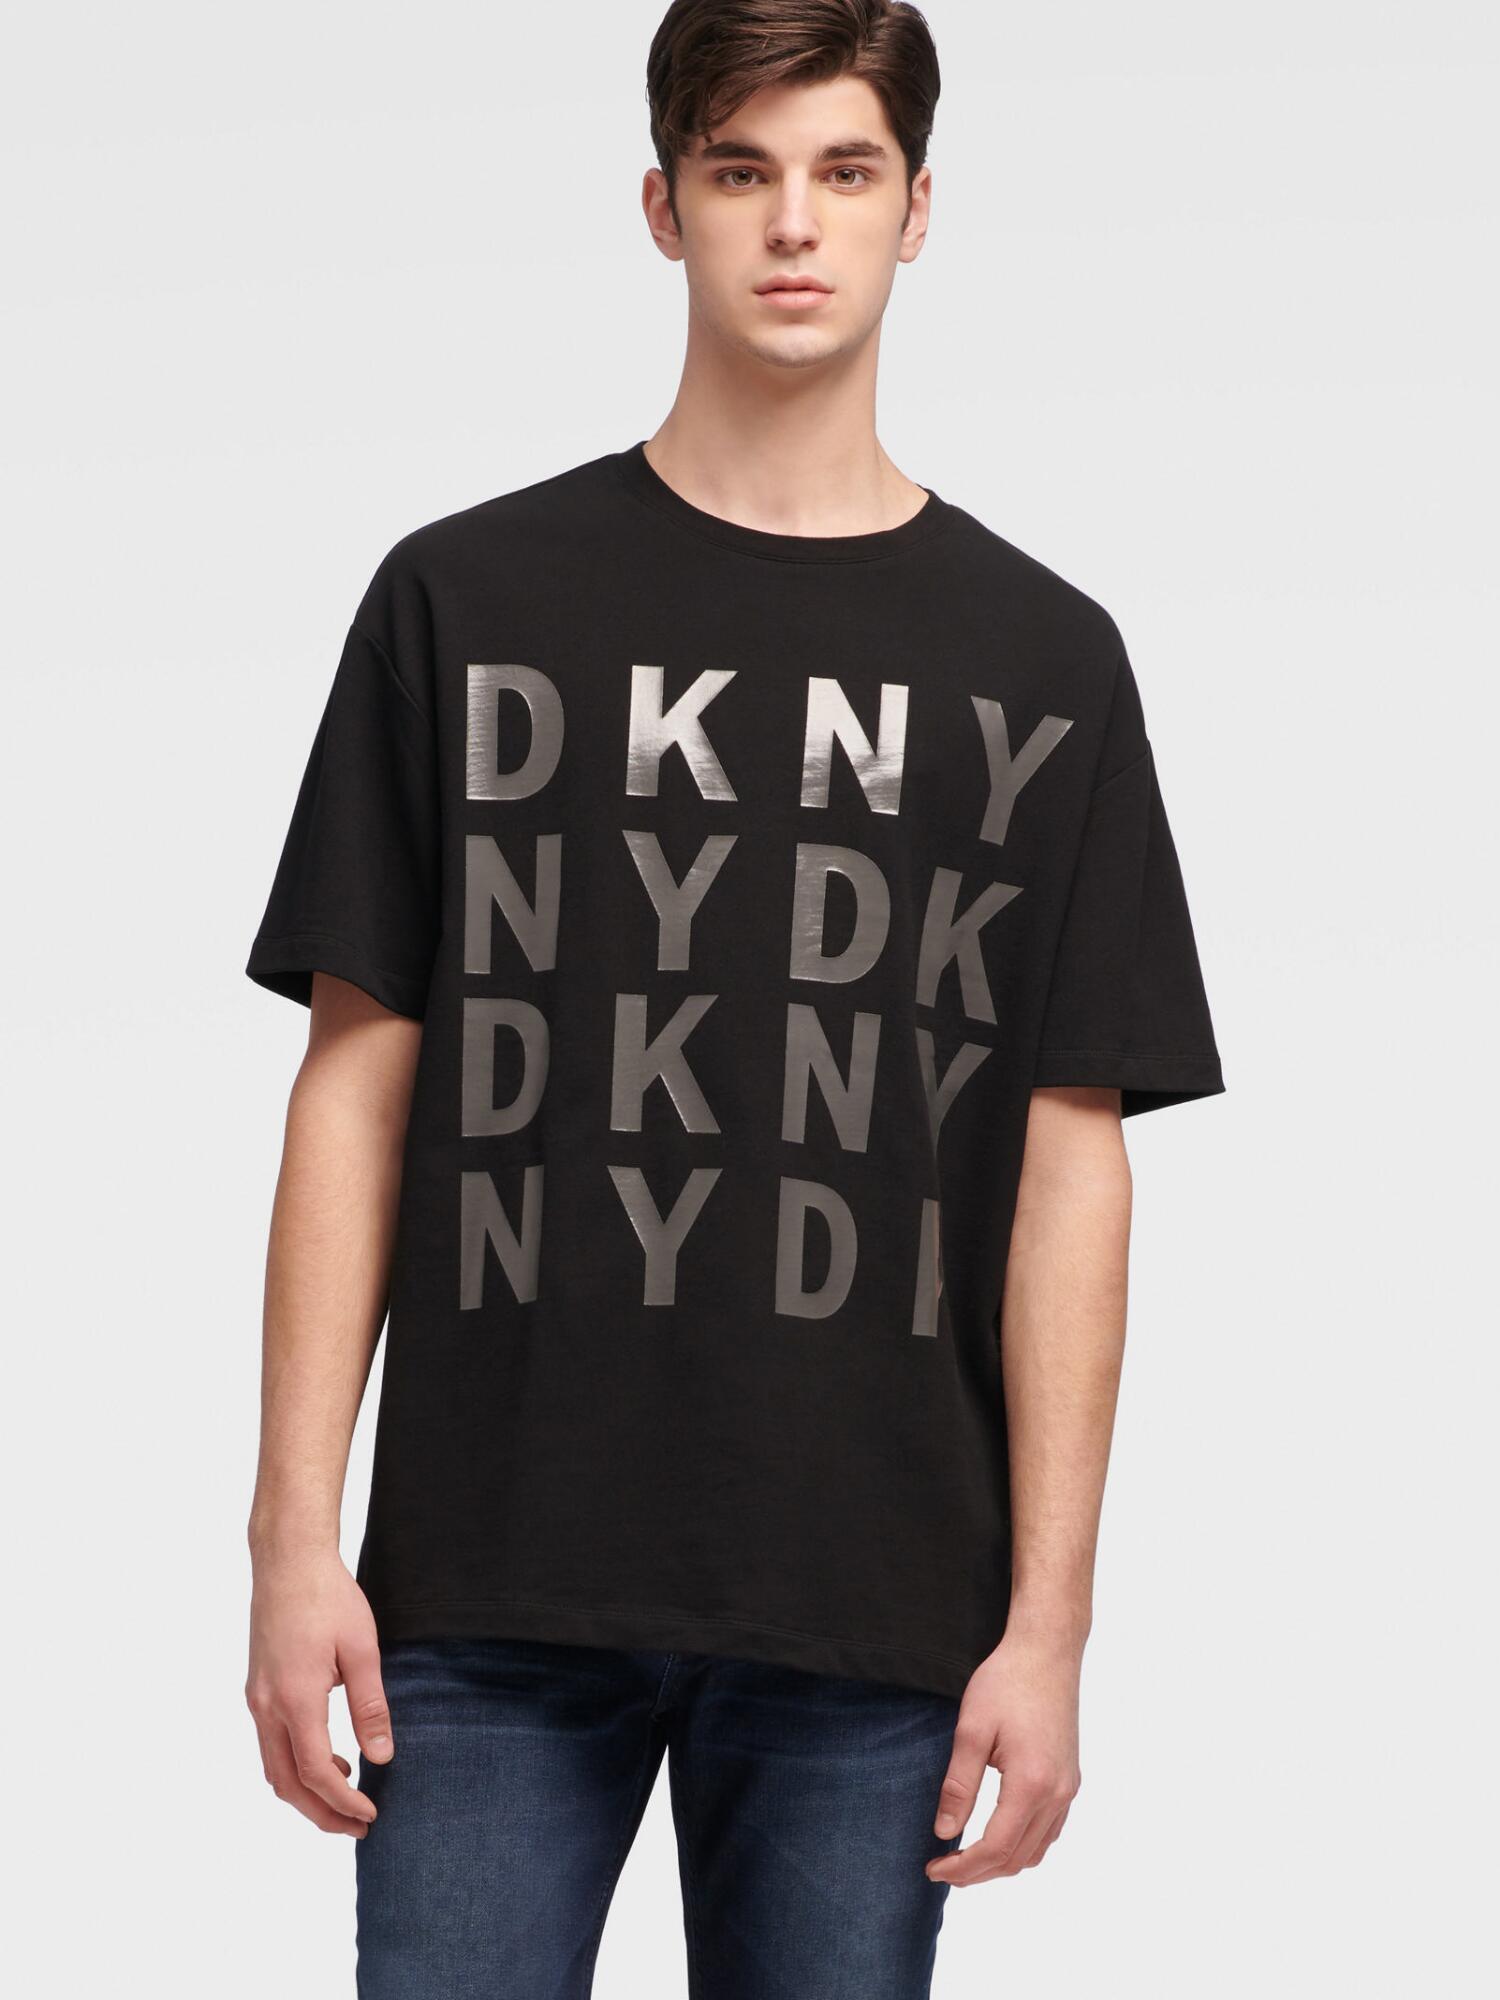 DKNY Oversized Logo Tee in Black for Men - Lyst